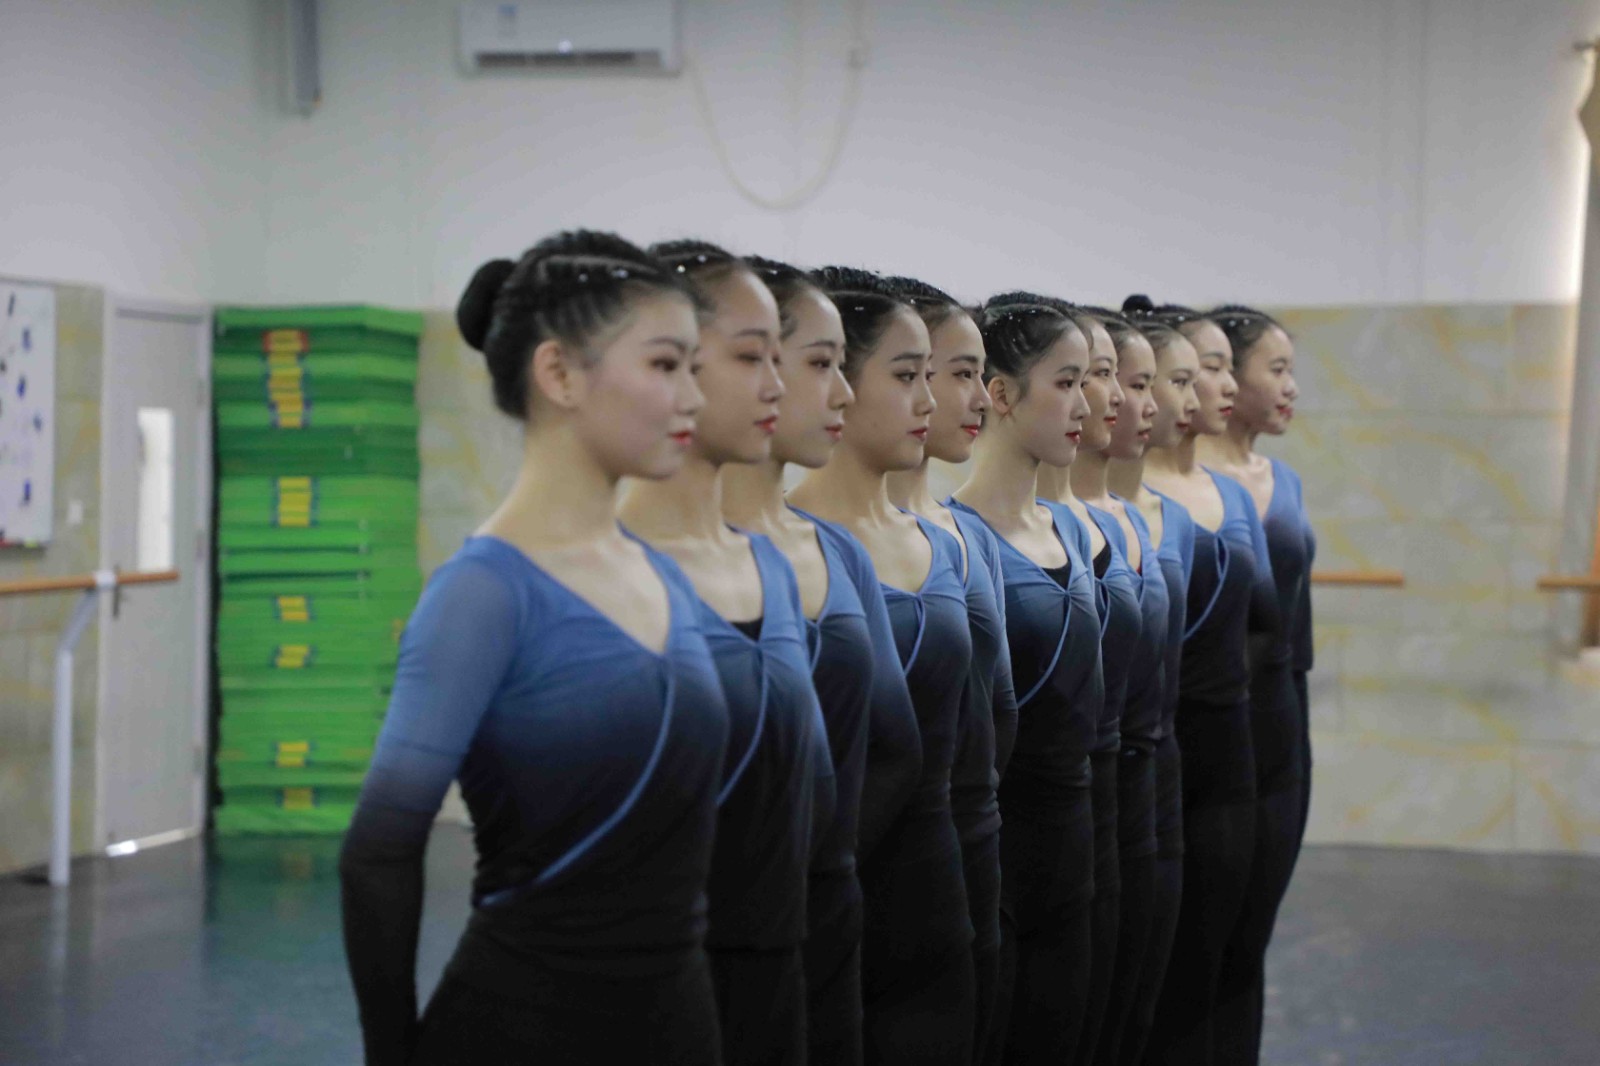 江蘇蘇州舞蹈藝考班怎么選 選擇蘇州舞蹈藝考培訓學校注意事項有哪些 再也不用擔心了